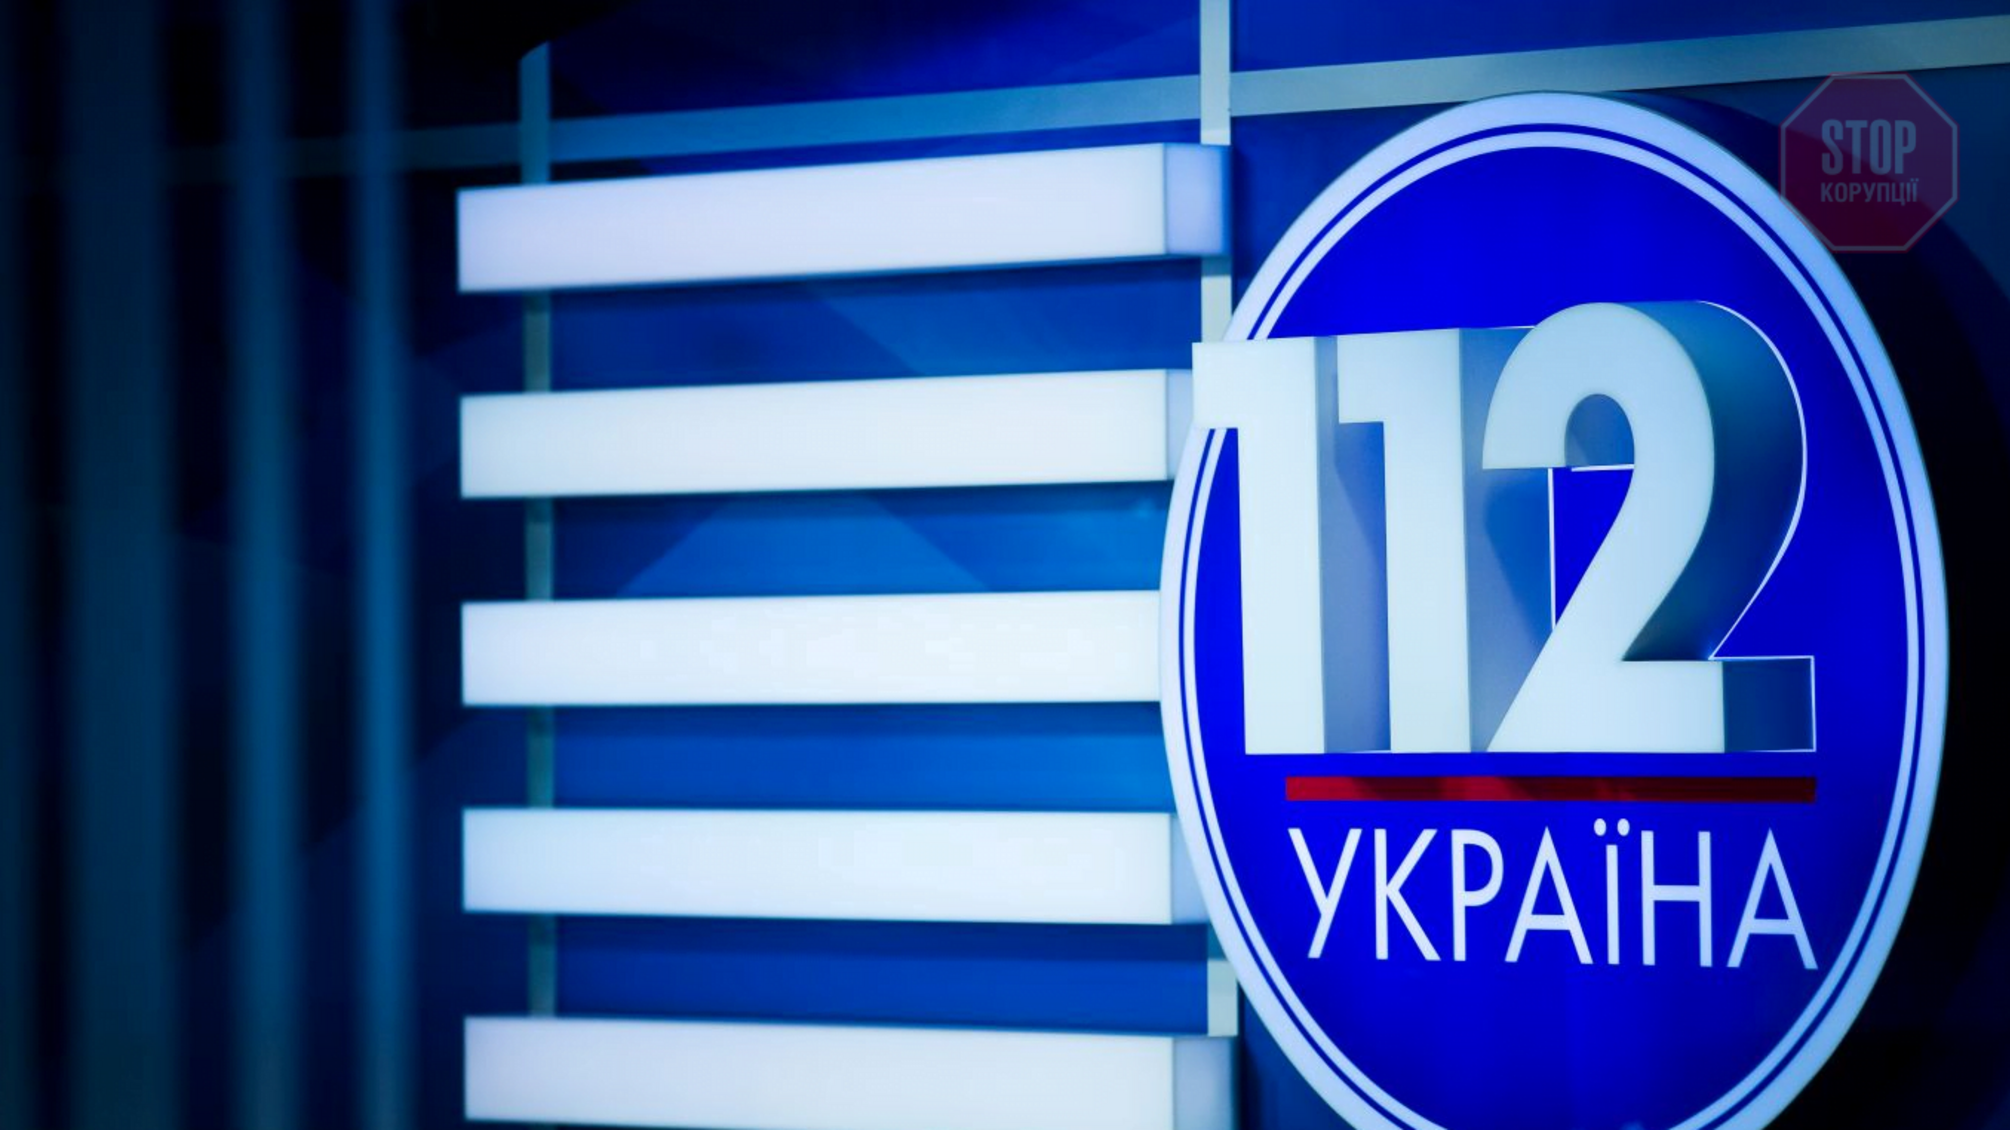 'Я розраховую, що моє майно буде повернуто мені', – Подщипков про '112 Україна'